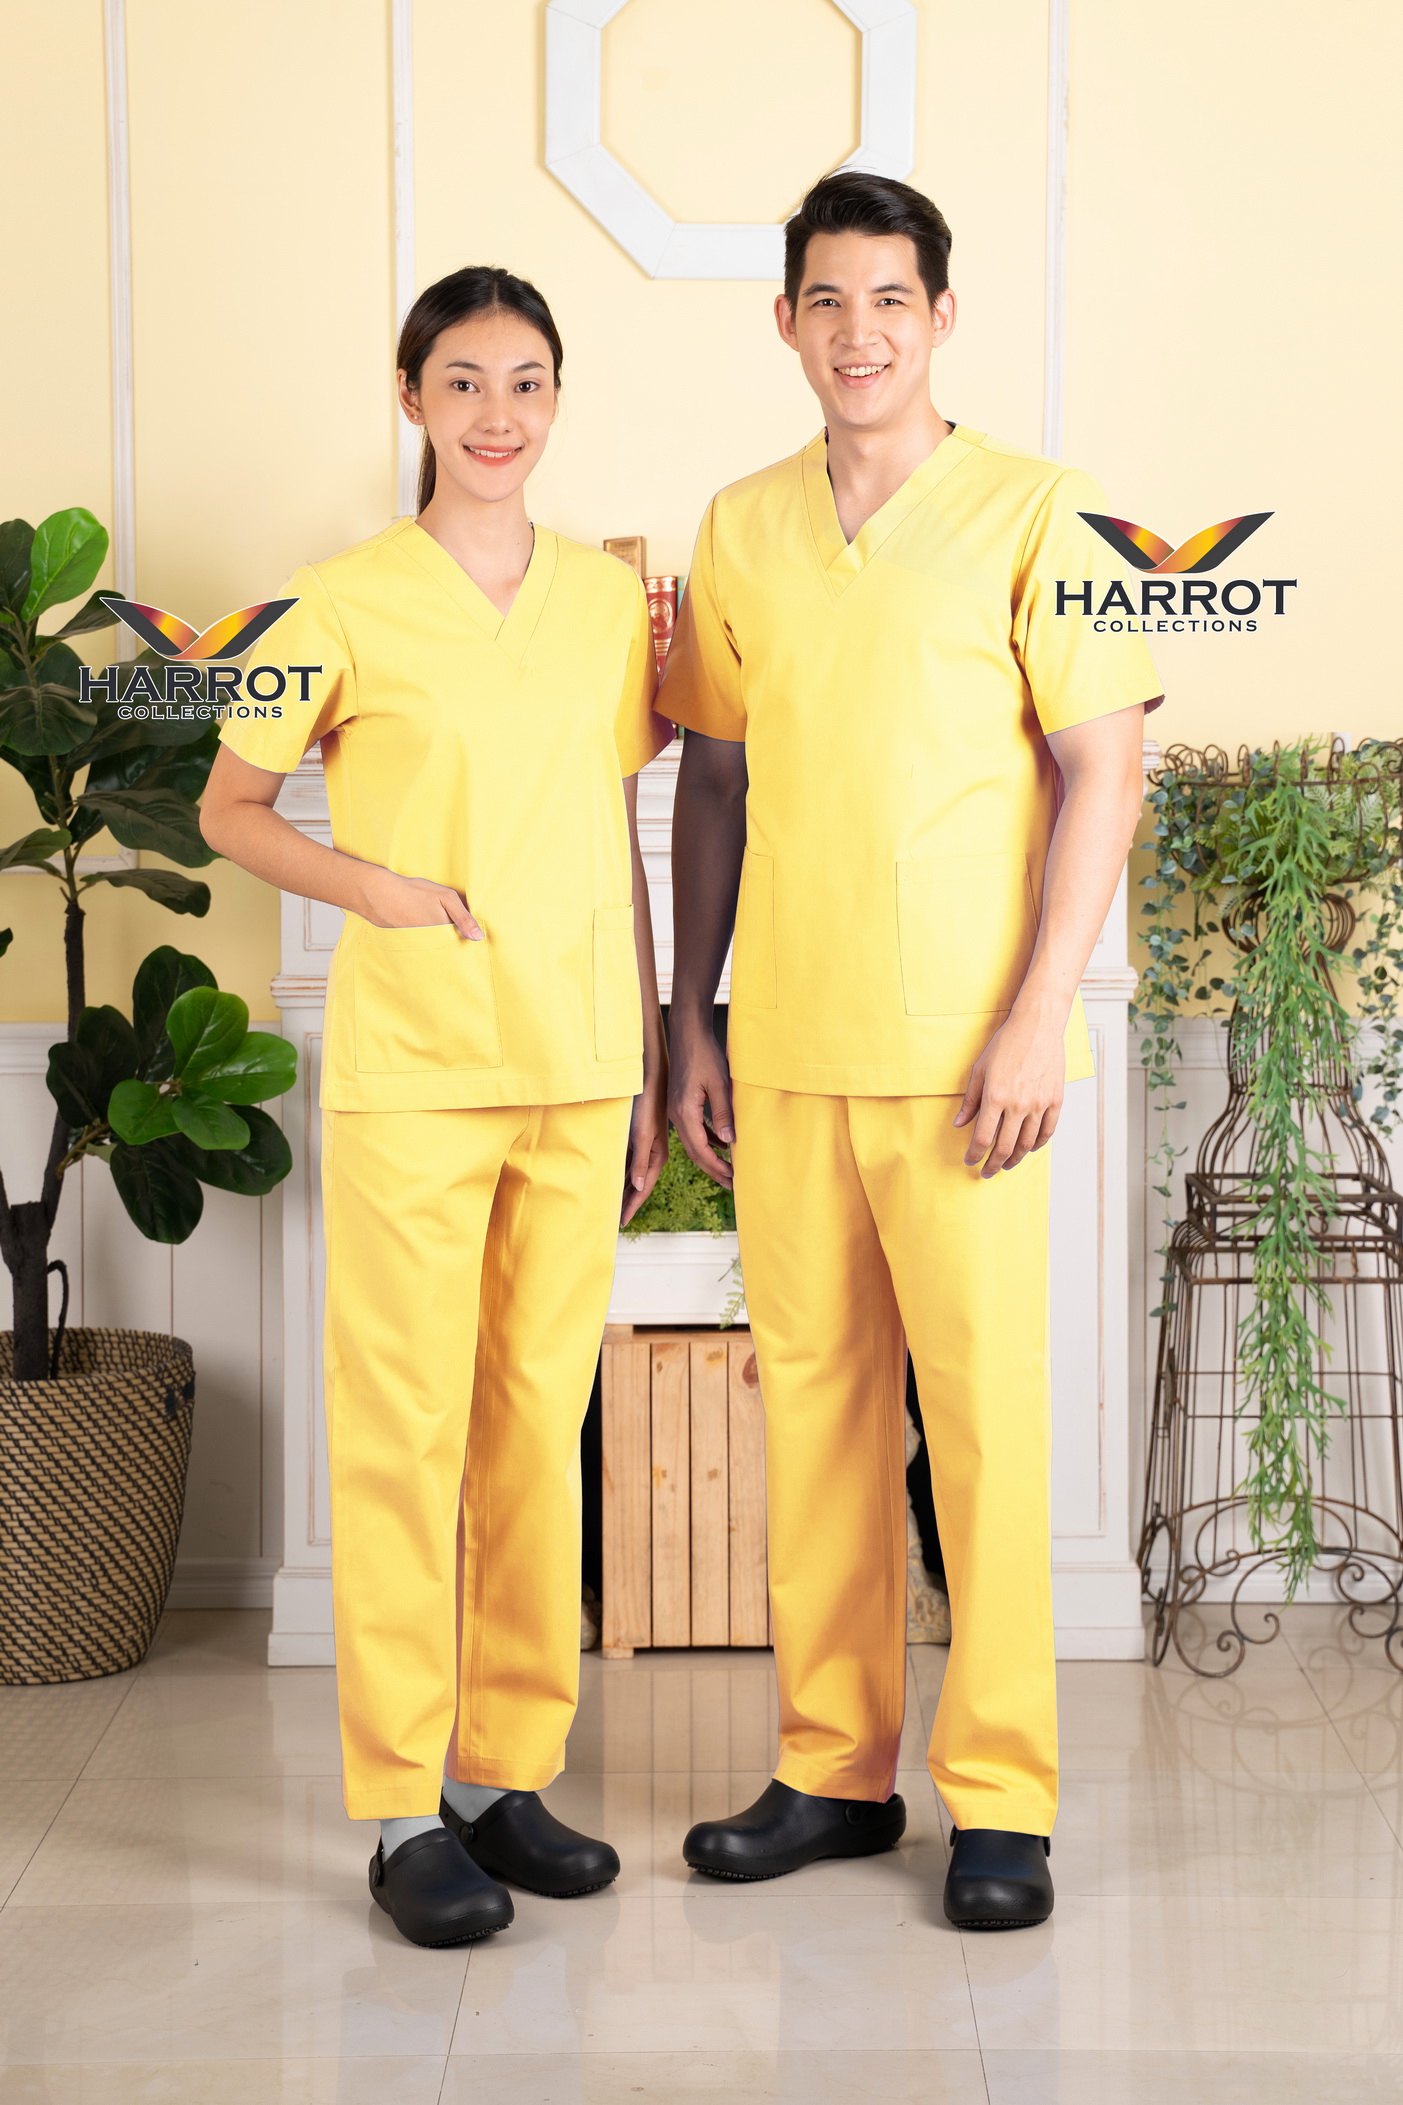 ชุดสครับ คอวี สีเหลือง (เสื้อ+กางเกง) (HPG0157)